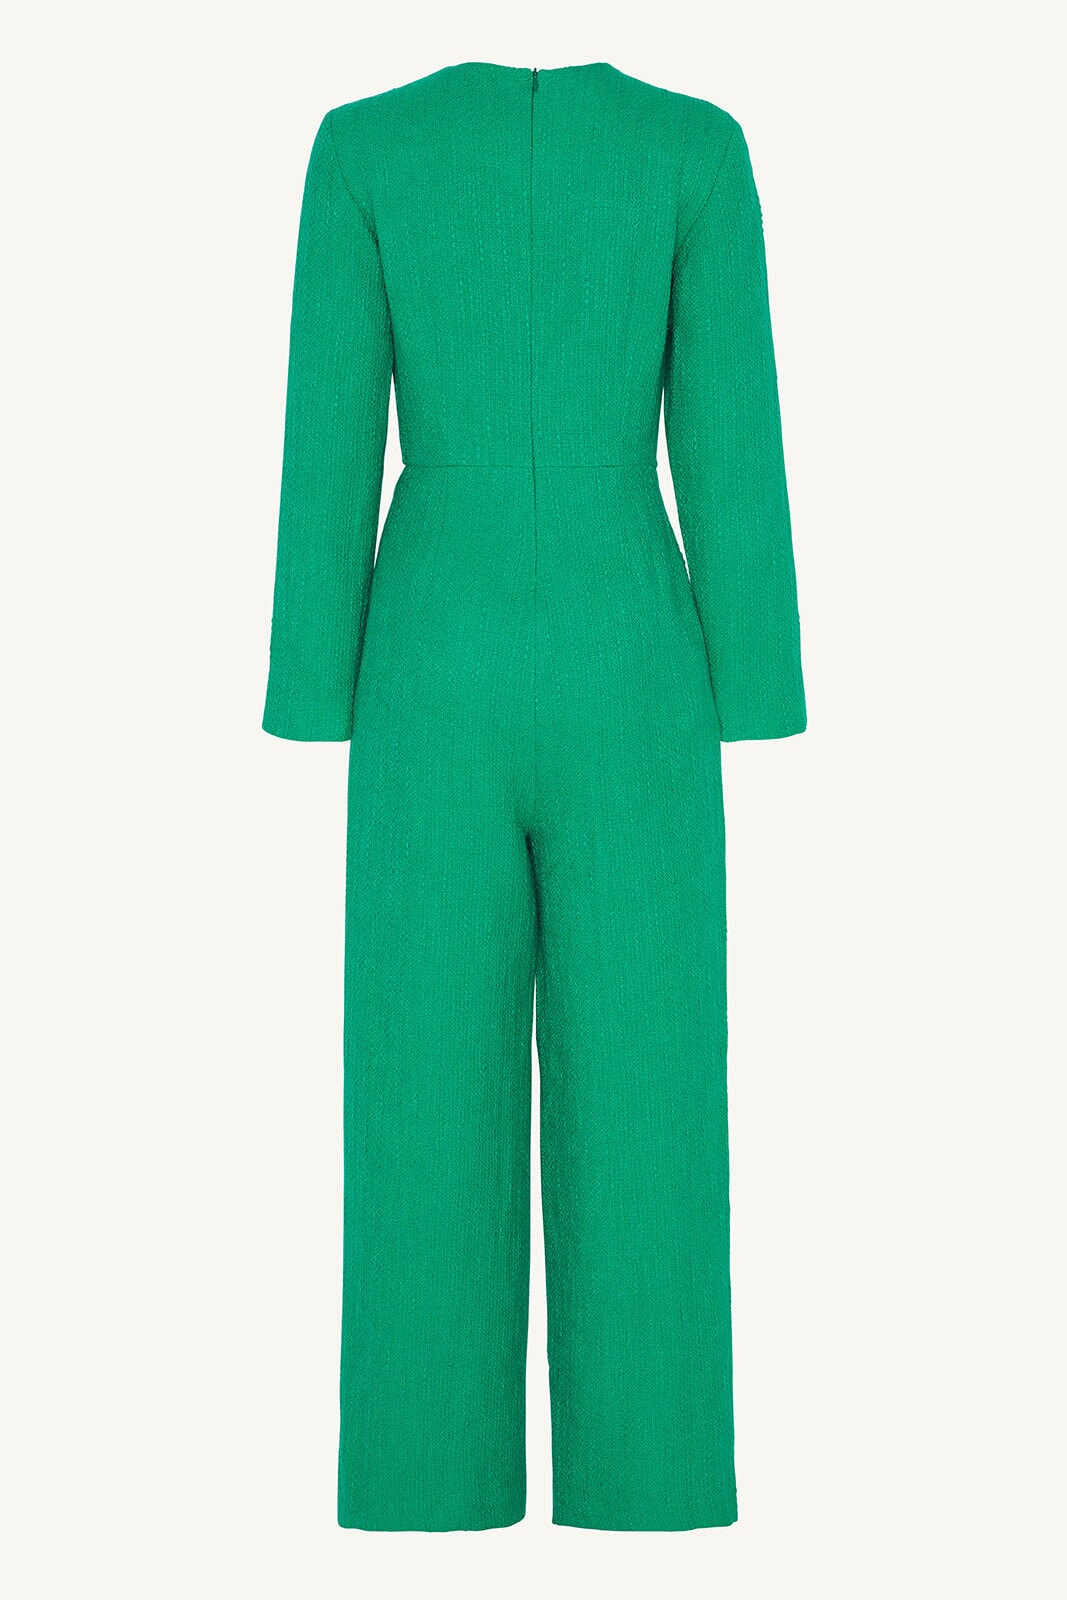 Aurora Tweed Long Sleeve Jumpsuit - Jade Clothing saigonodysseyhotel 